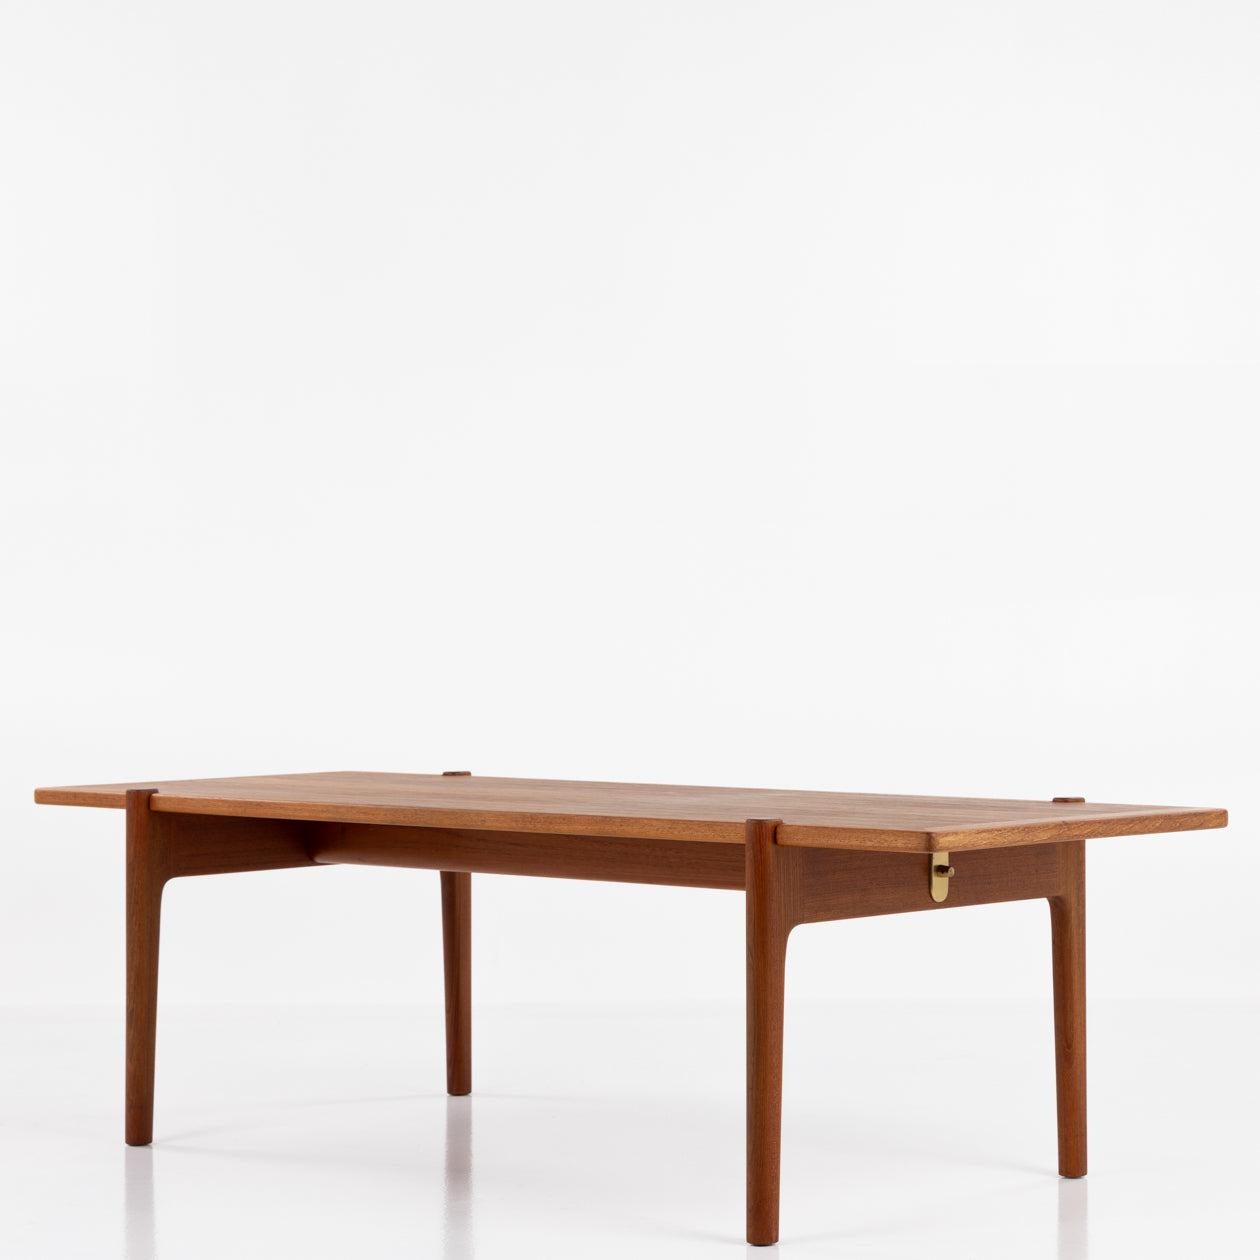 Table basse en teck avec plateau réversible.
Fabriqué par Johannes Hansen.